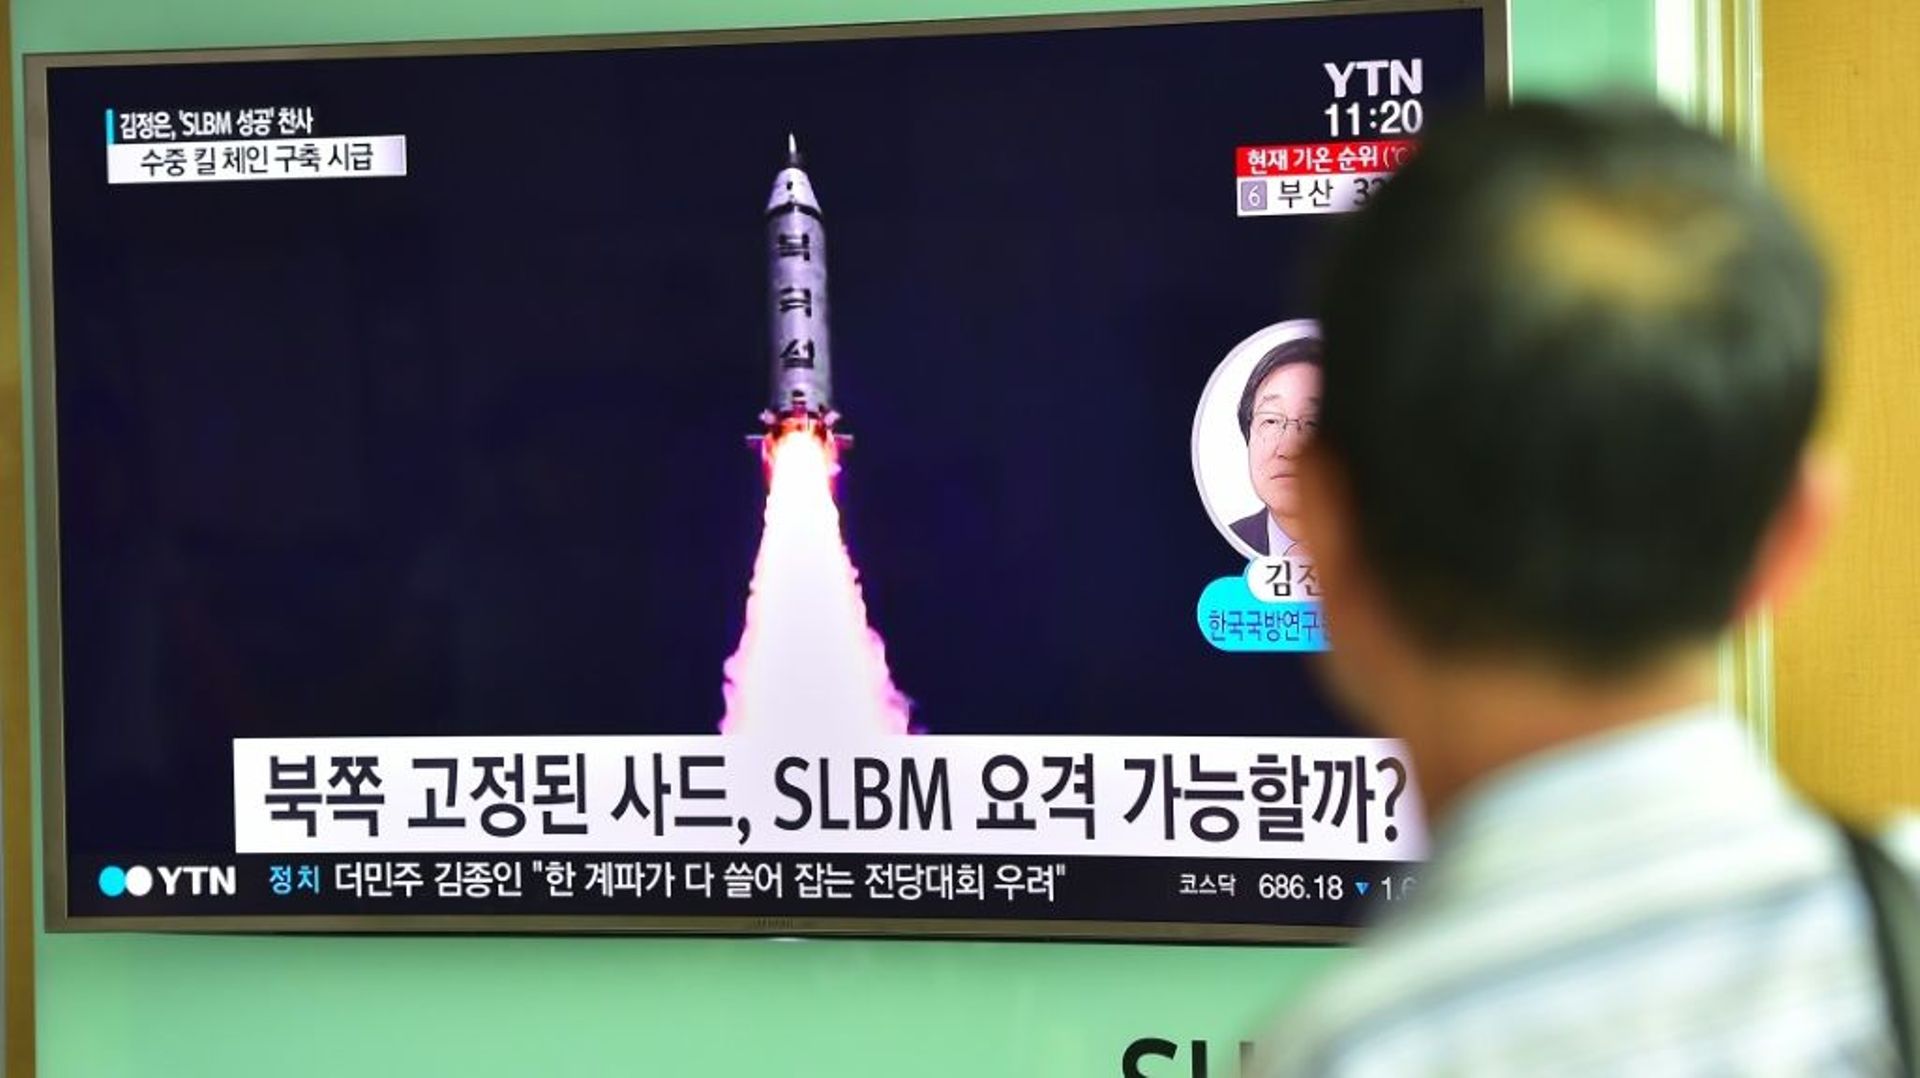 Un homme scrute un écran de télévision annonçant un nouveau tir de missile par la Corée du Nord, le 25 août 2016 à Séoul, en Corée du Sud